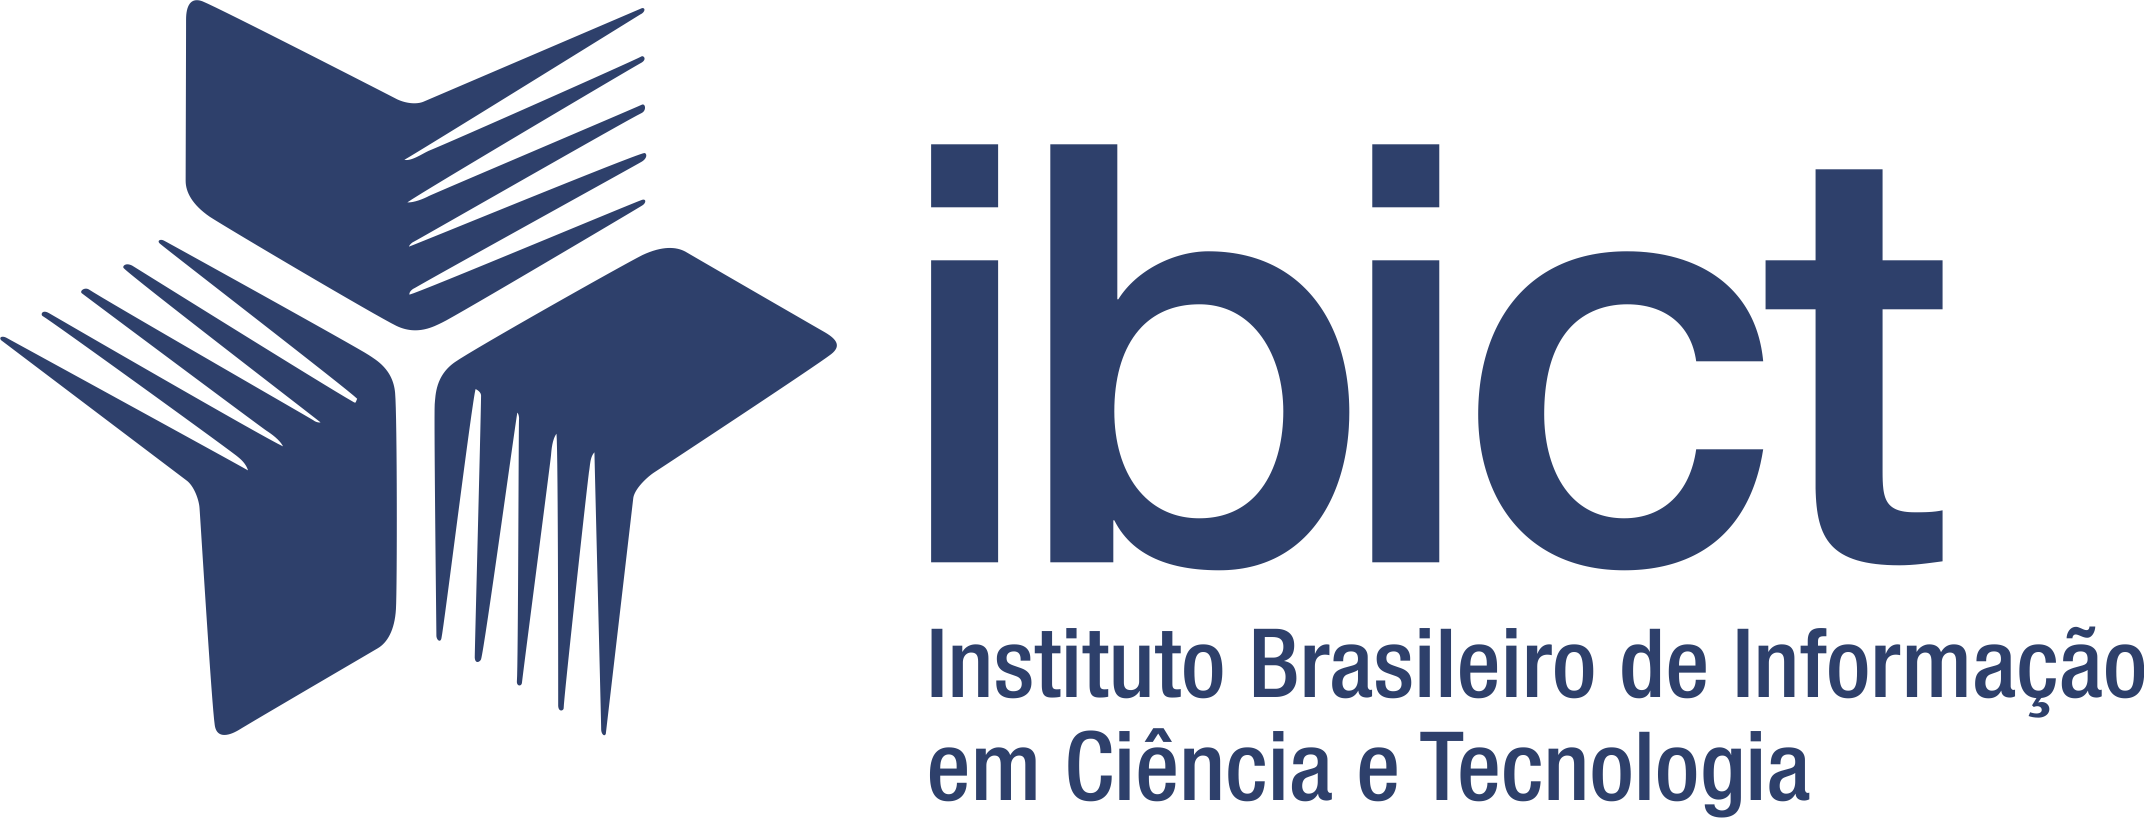 Logomarca — Instituto Brasileiro de Informação em Ciência e Tecnologia